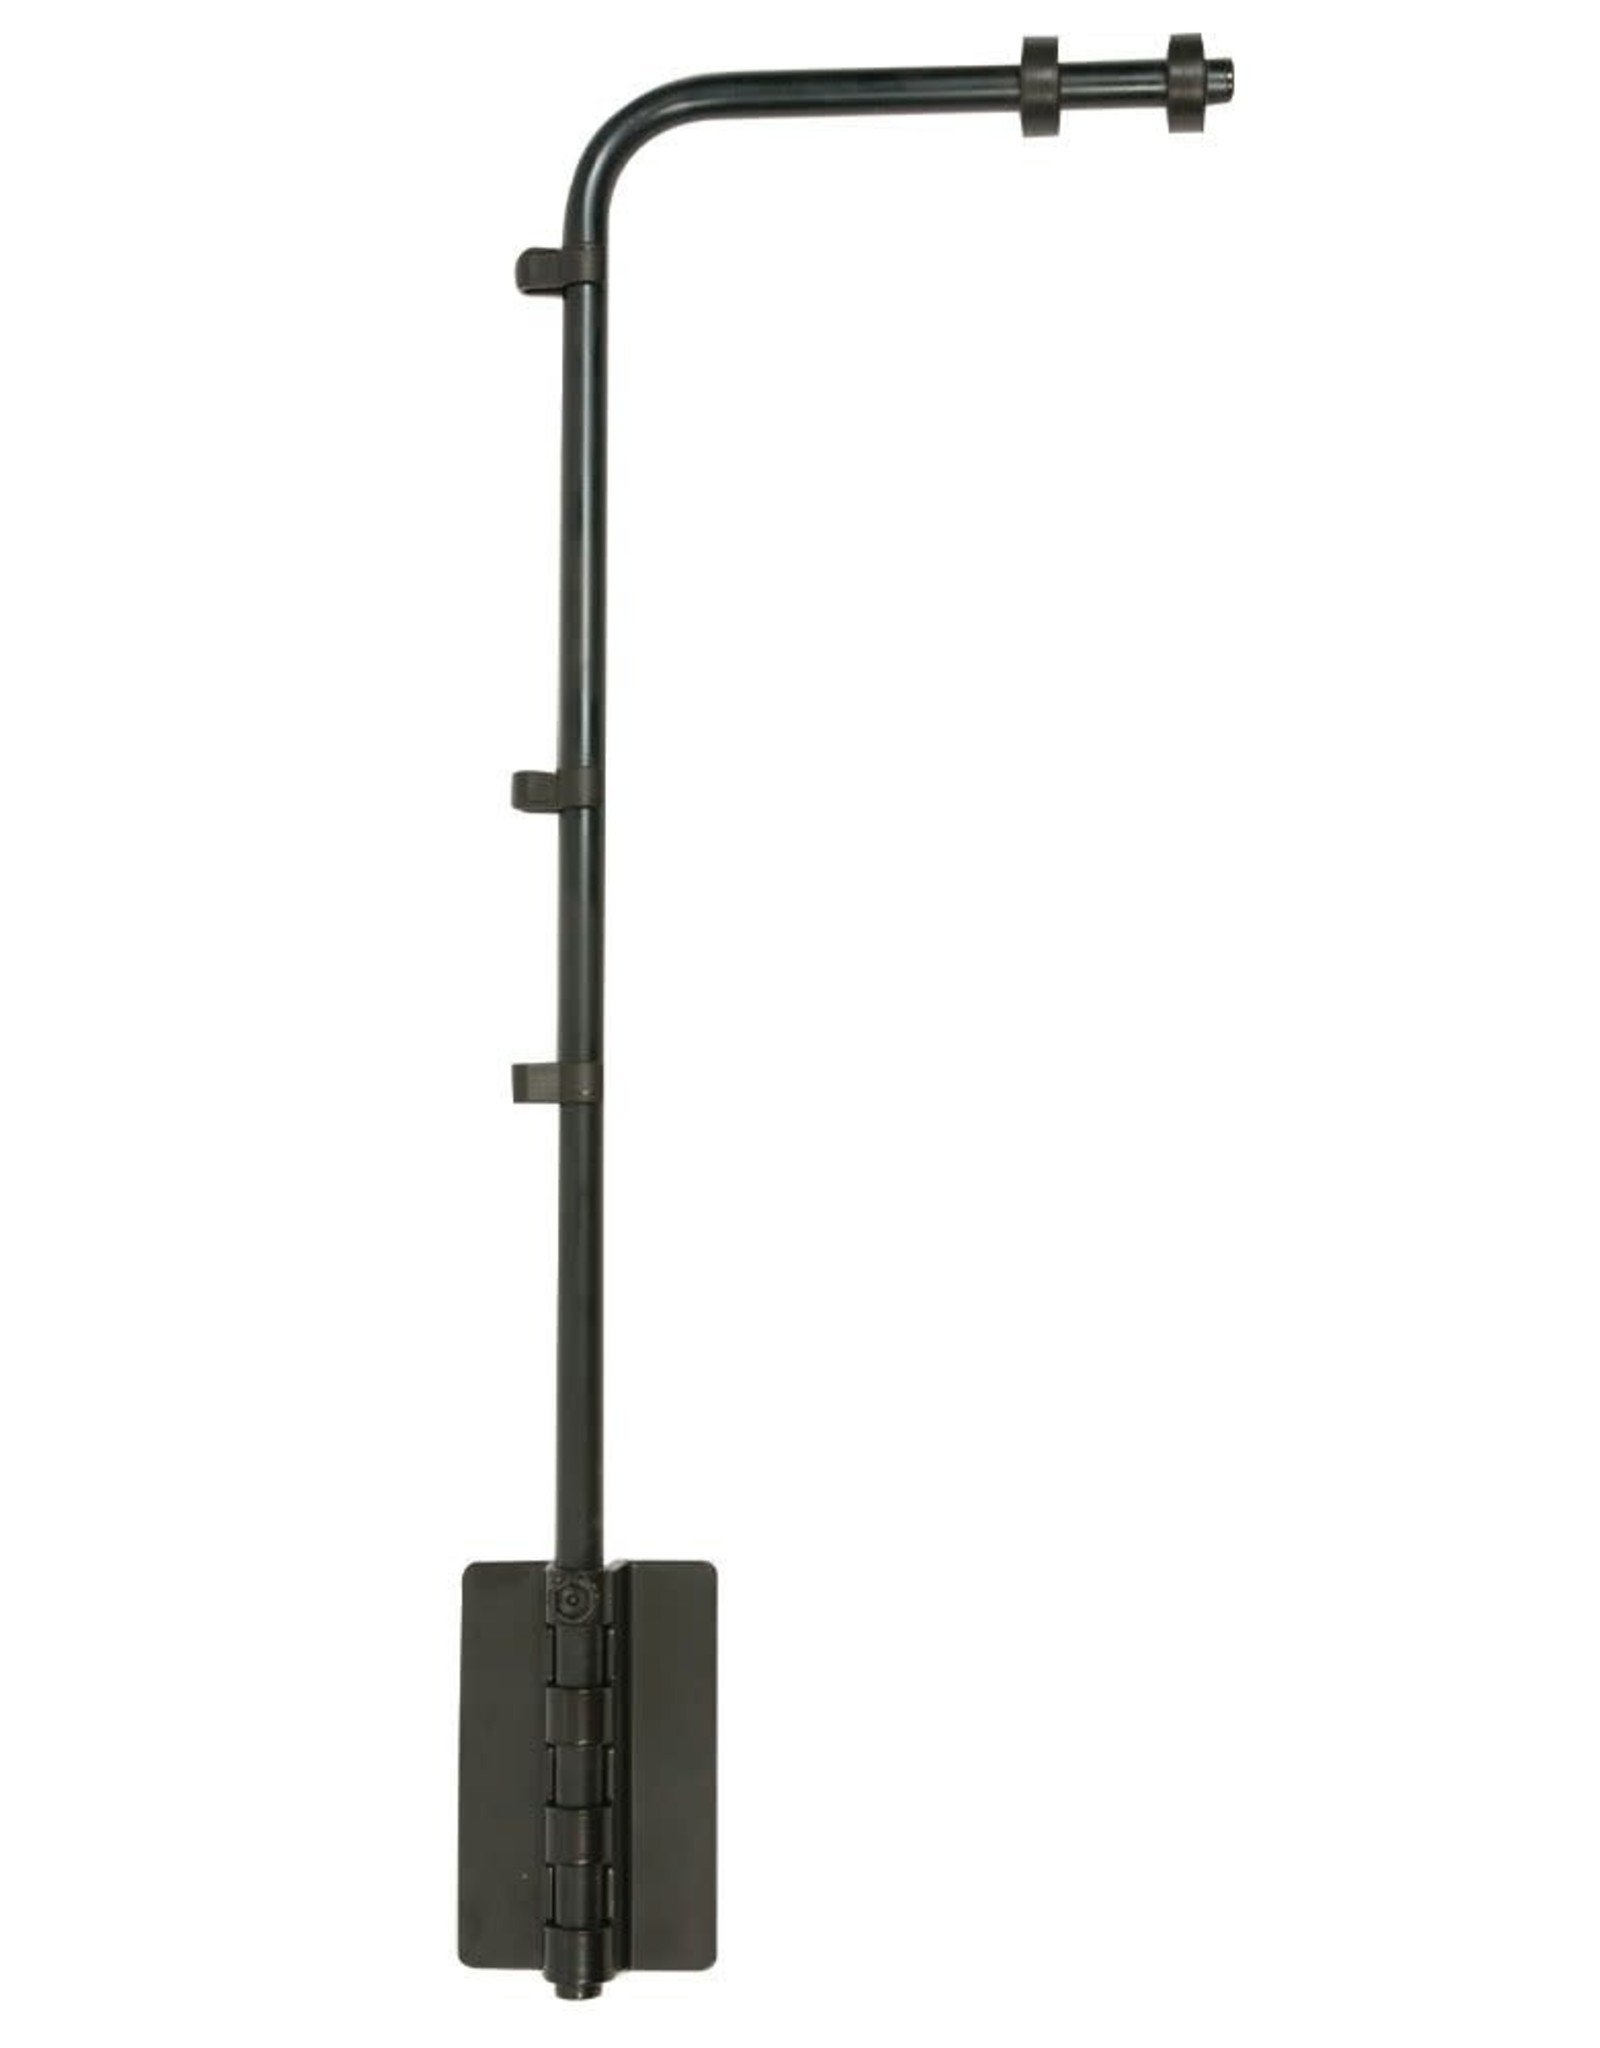 EXO TERRA EXO TERRA- PT2223- LAMP HOLDER BRACKET- SUPPORT FIXTURE- FOR DOMES- 1.5X8.5X21